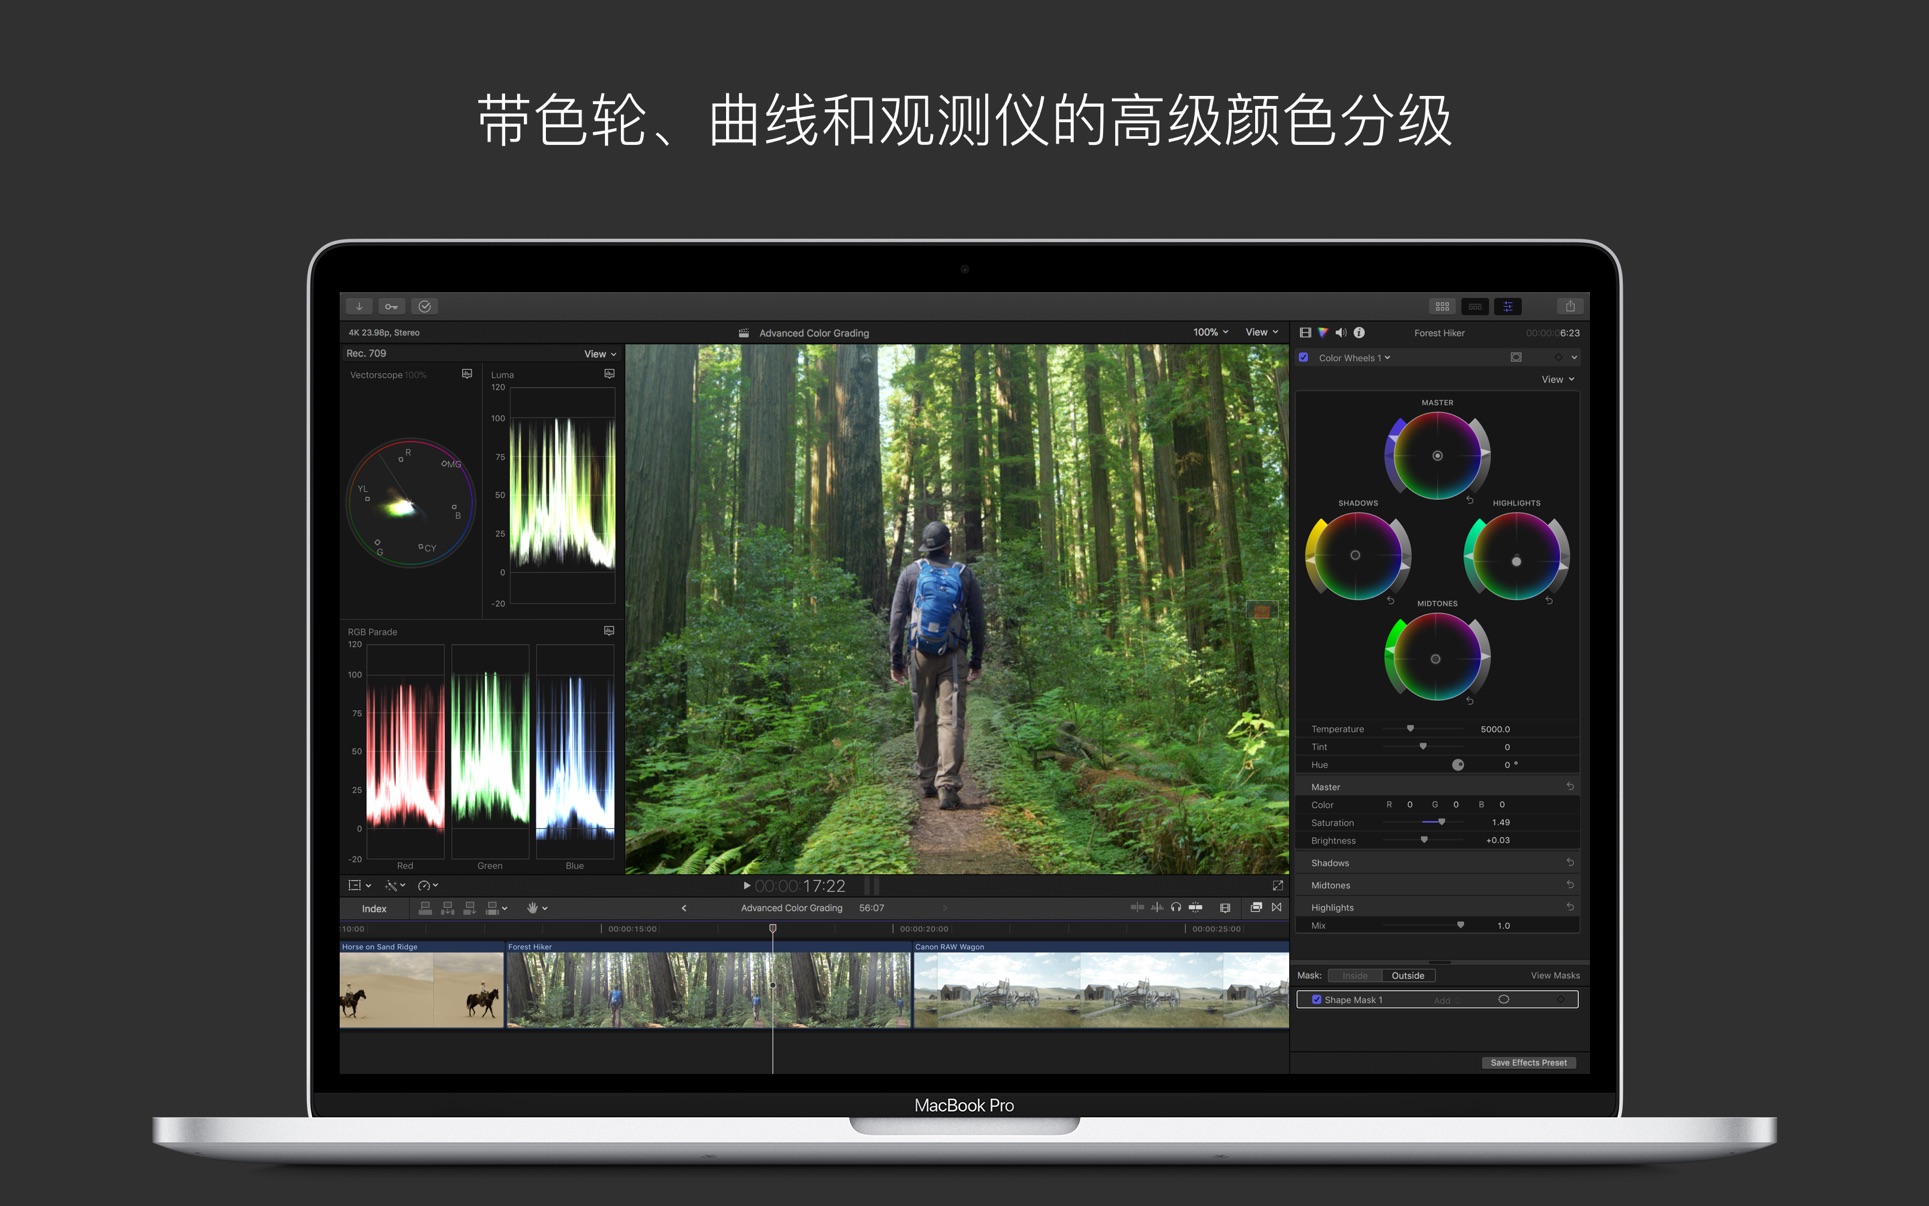 视频制作 Final Cut Pro 10.6.1 Mac 破解版 最强大视频后期制作软件